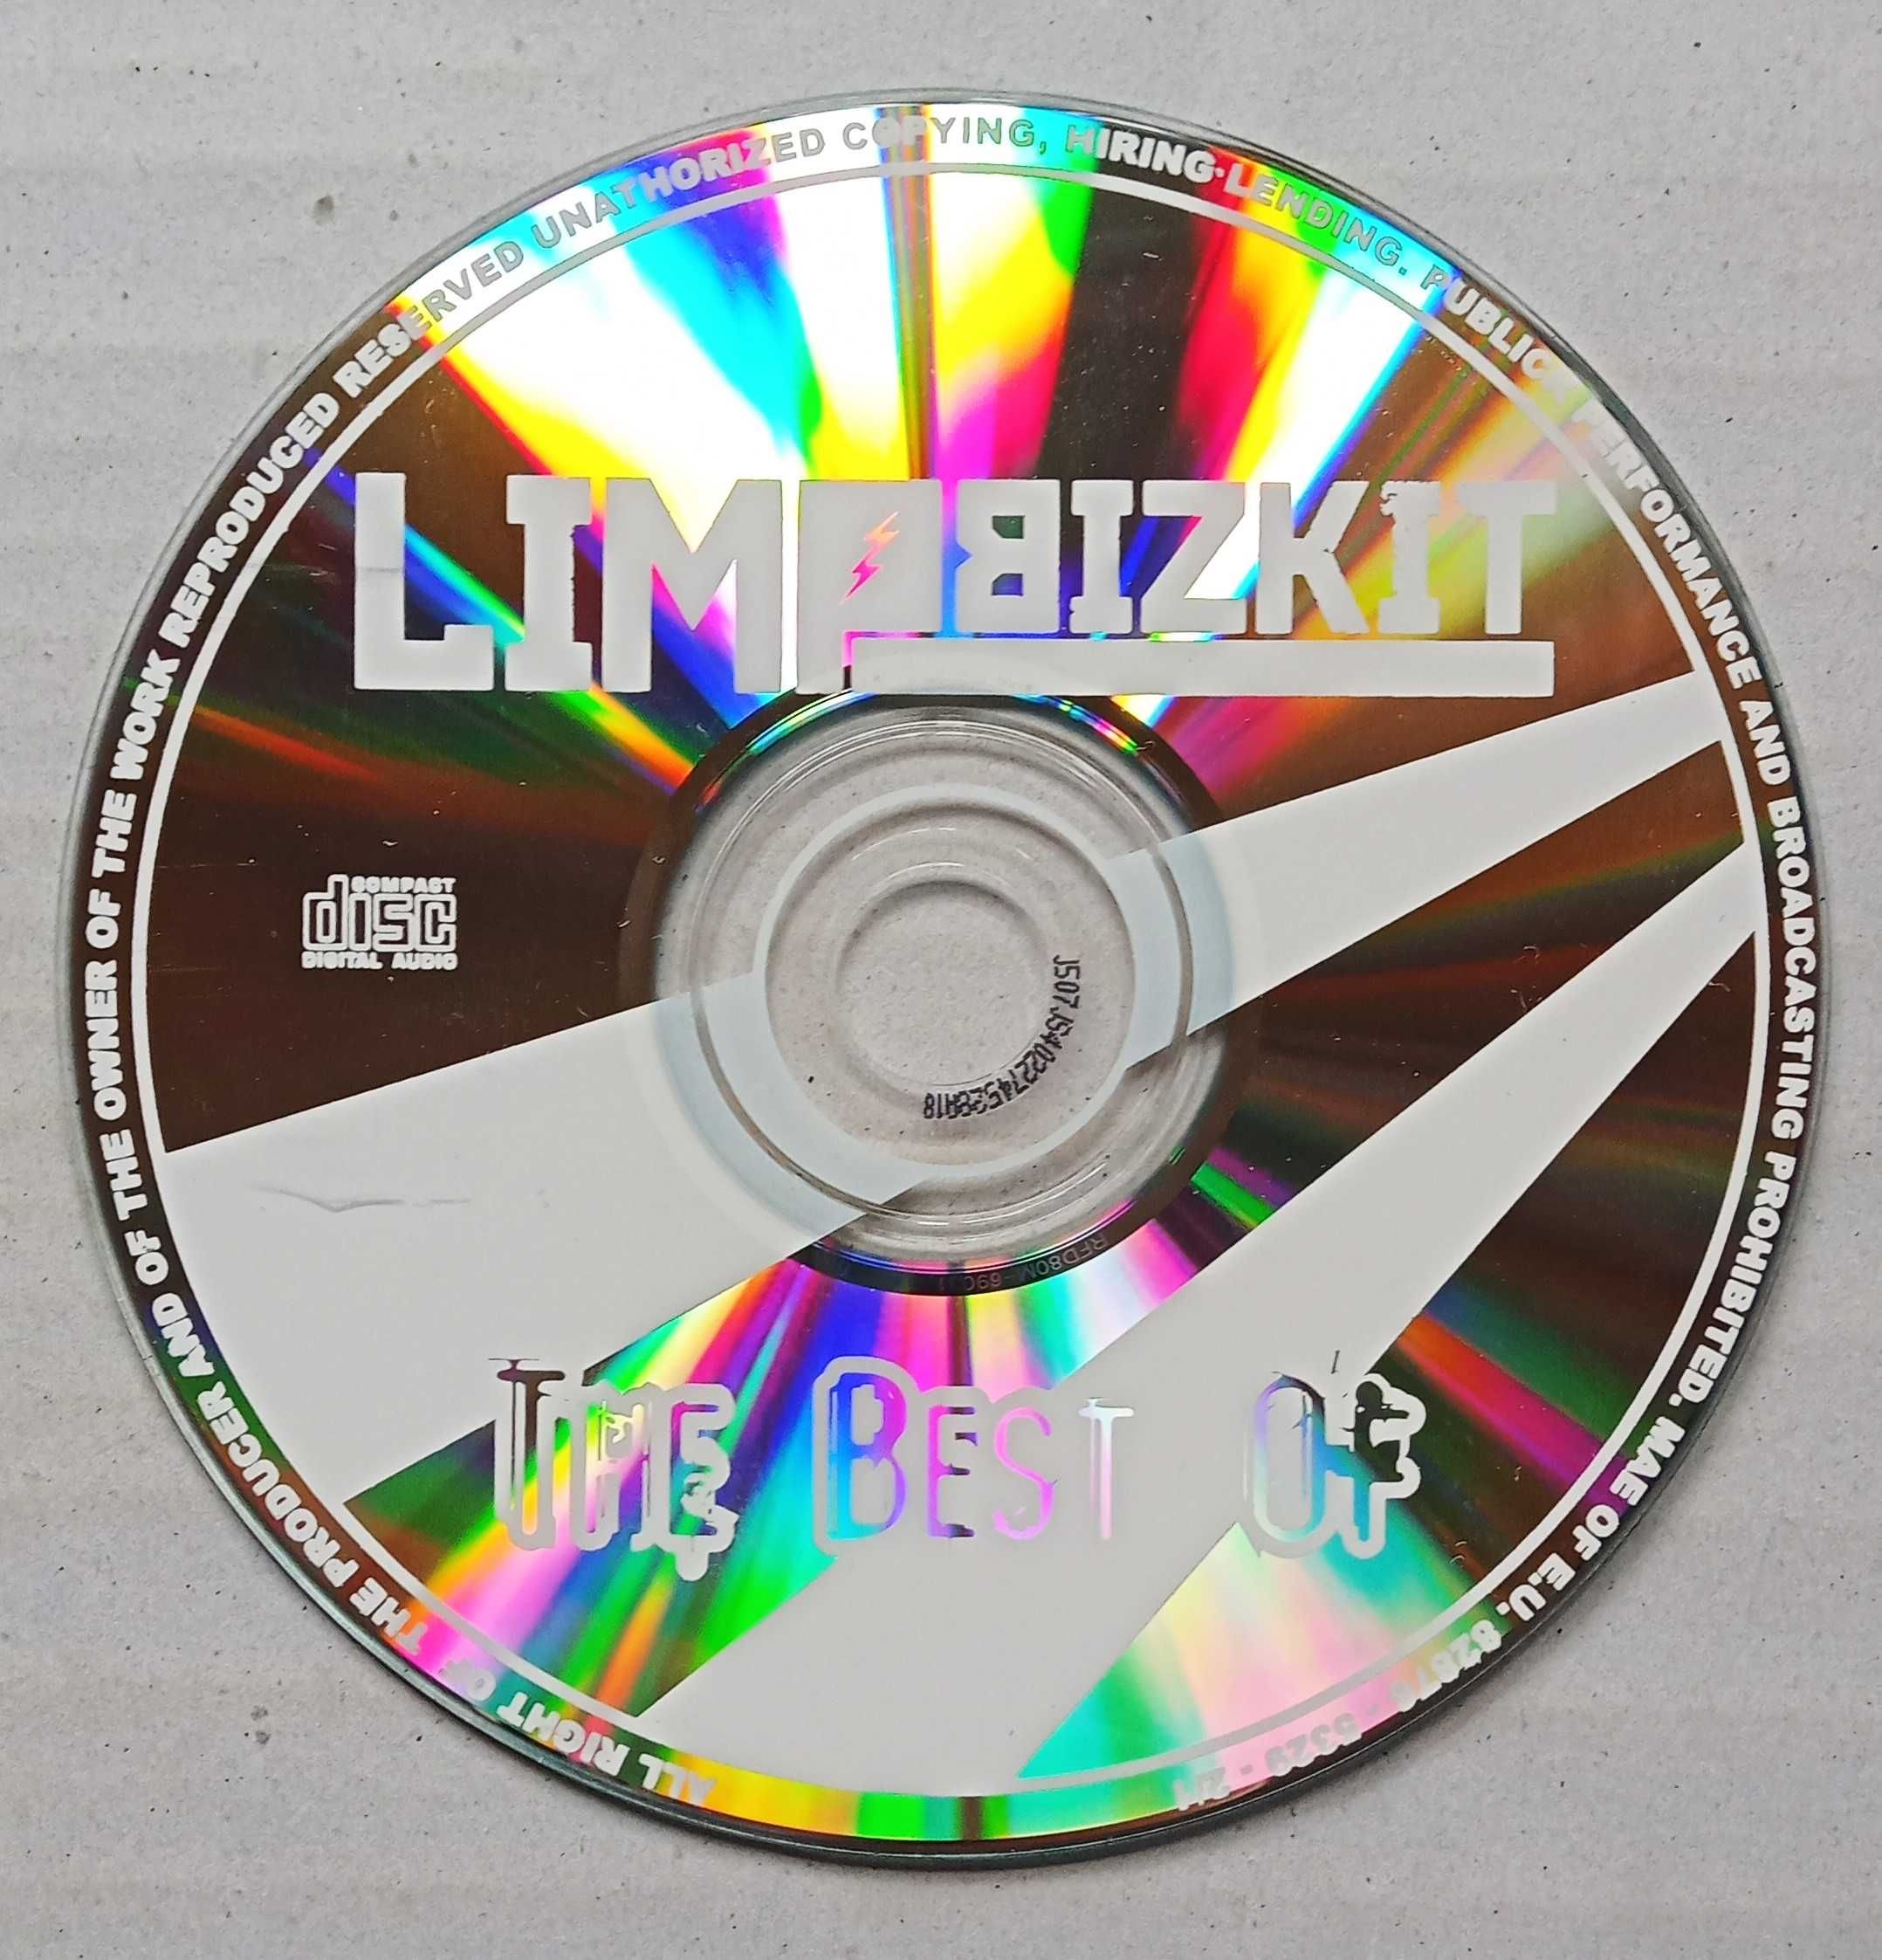 Płyta Cd - Limbizkit - Greatest Hitz